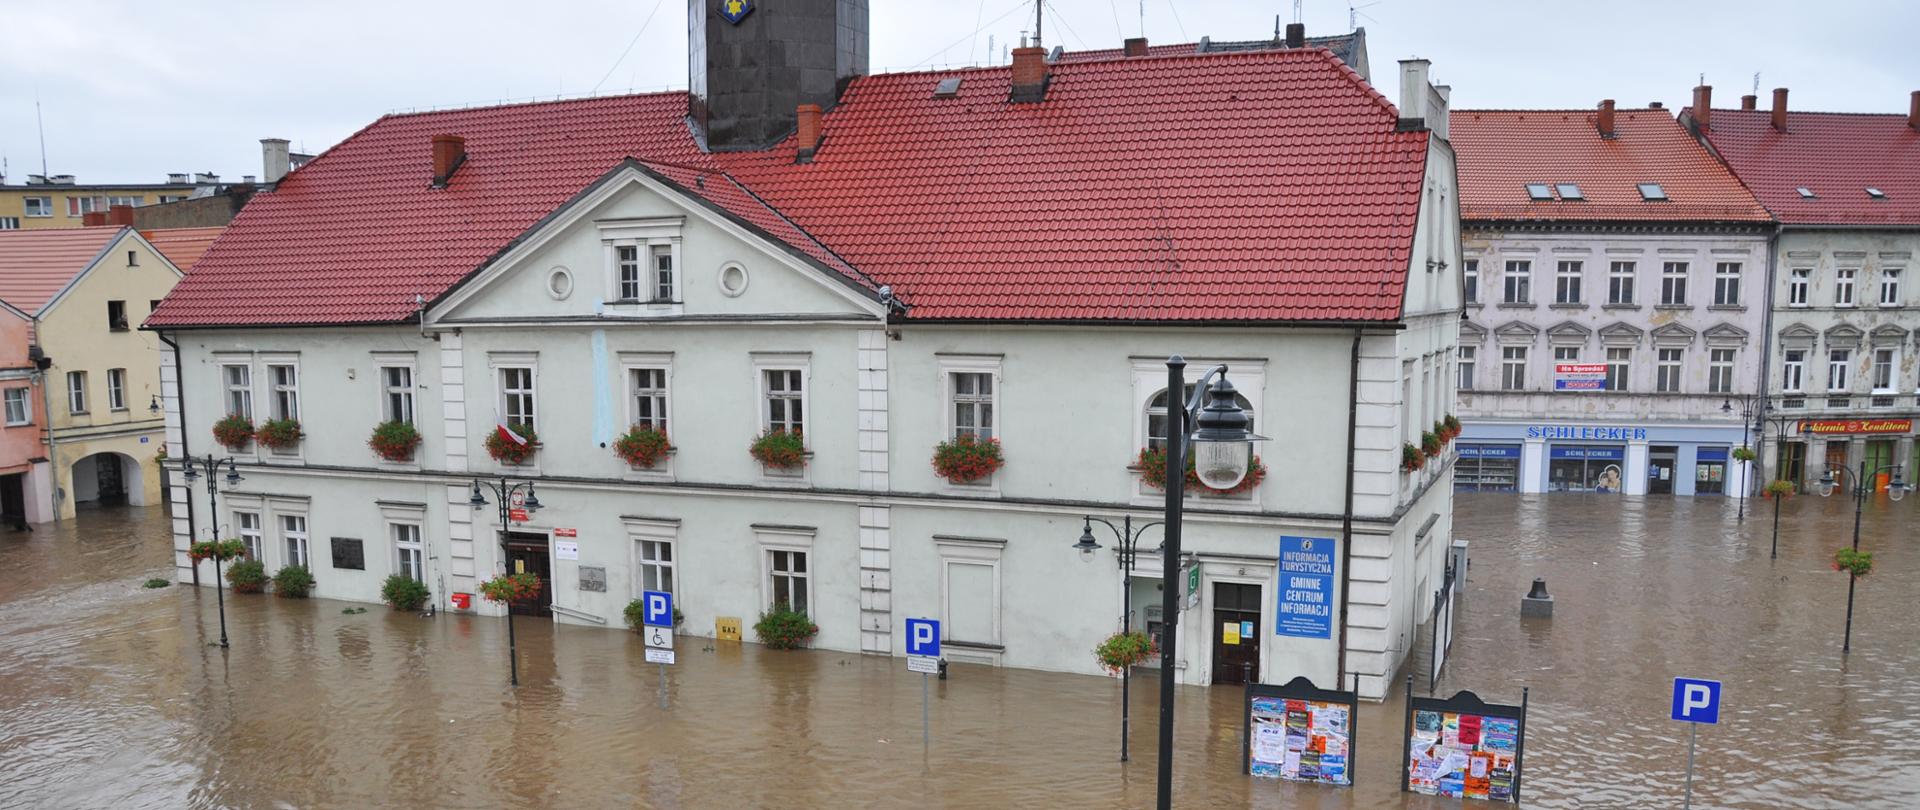 widać budynek urzędu miasta otoczony wodą do głębokości 1 metra